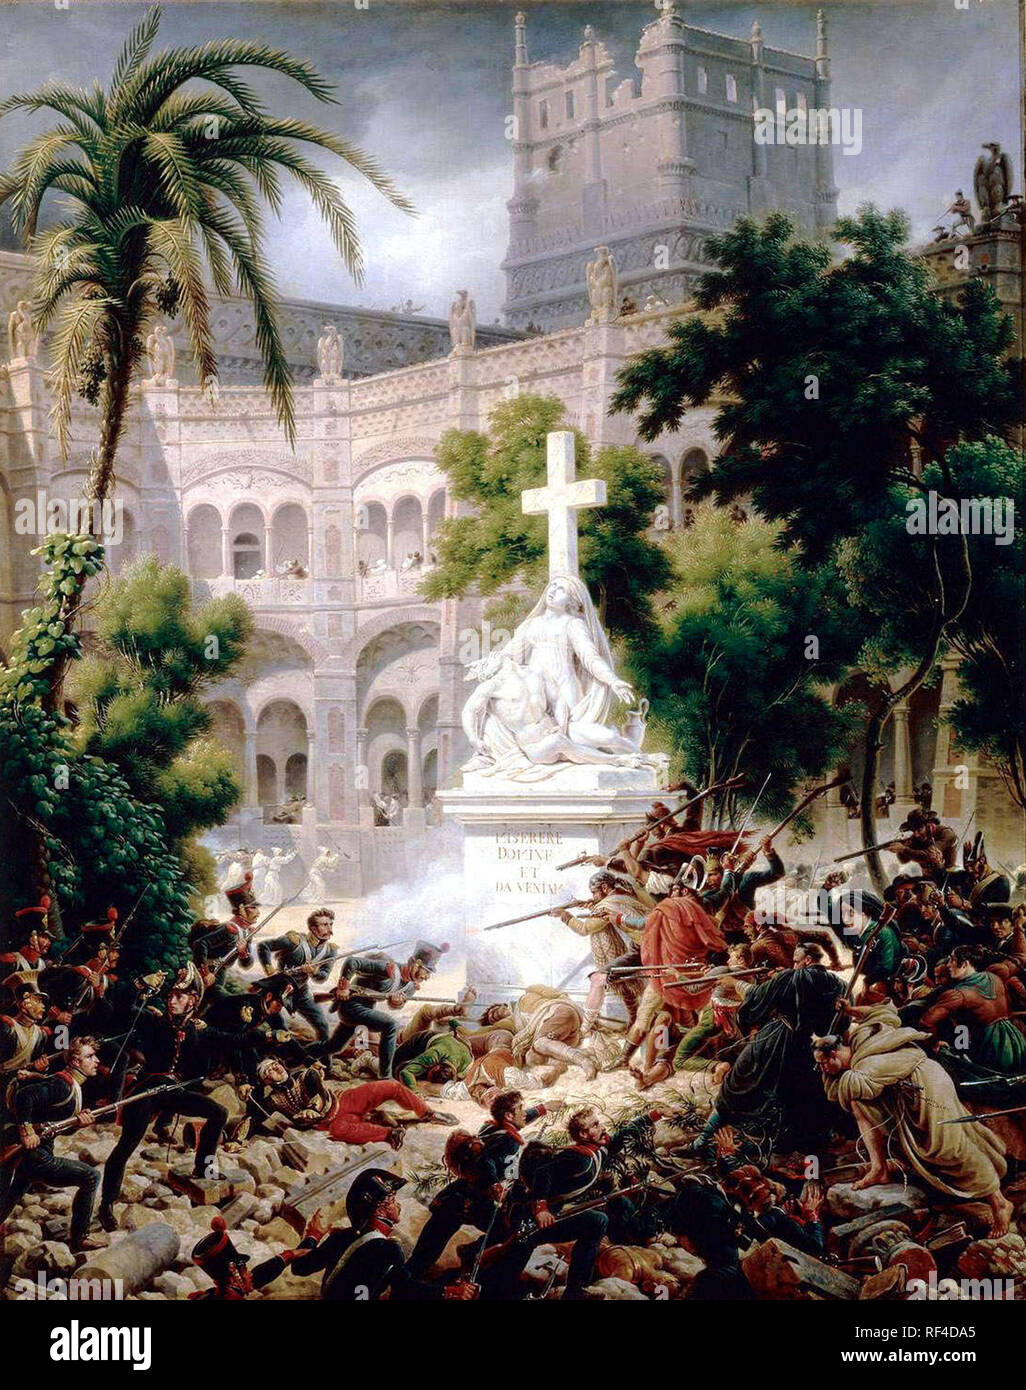 Belagerung von Saragossa (1809) von General Louis-Fran çois Lejeune, der Zweiten Belagerung von Saragossa war die Französische erfassen in der spanischen Stadt Zaragoza (Saragossa) während der Krieg der Halbinsel. Zeigt die Kämpfe vom 8. Februar 1809. Stockfoto